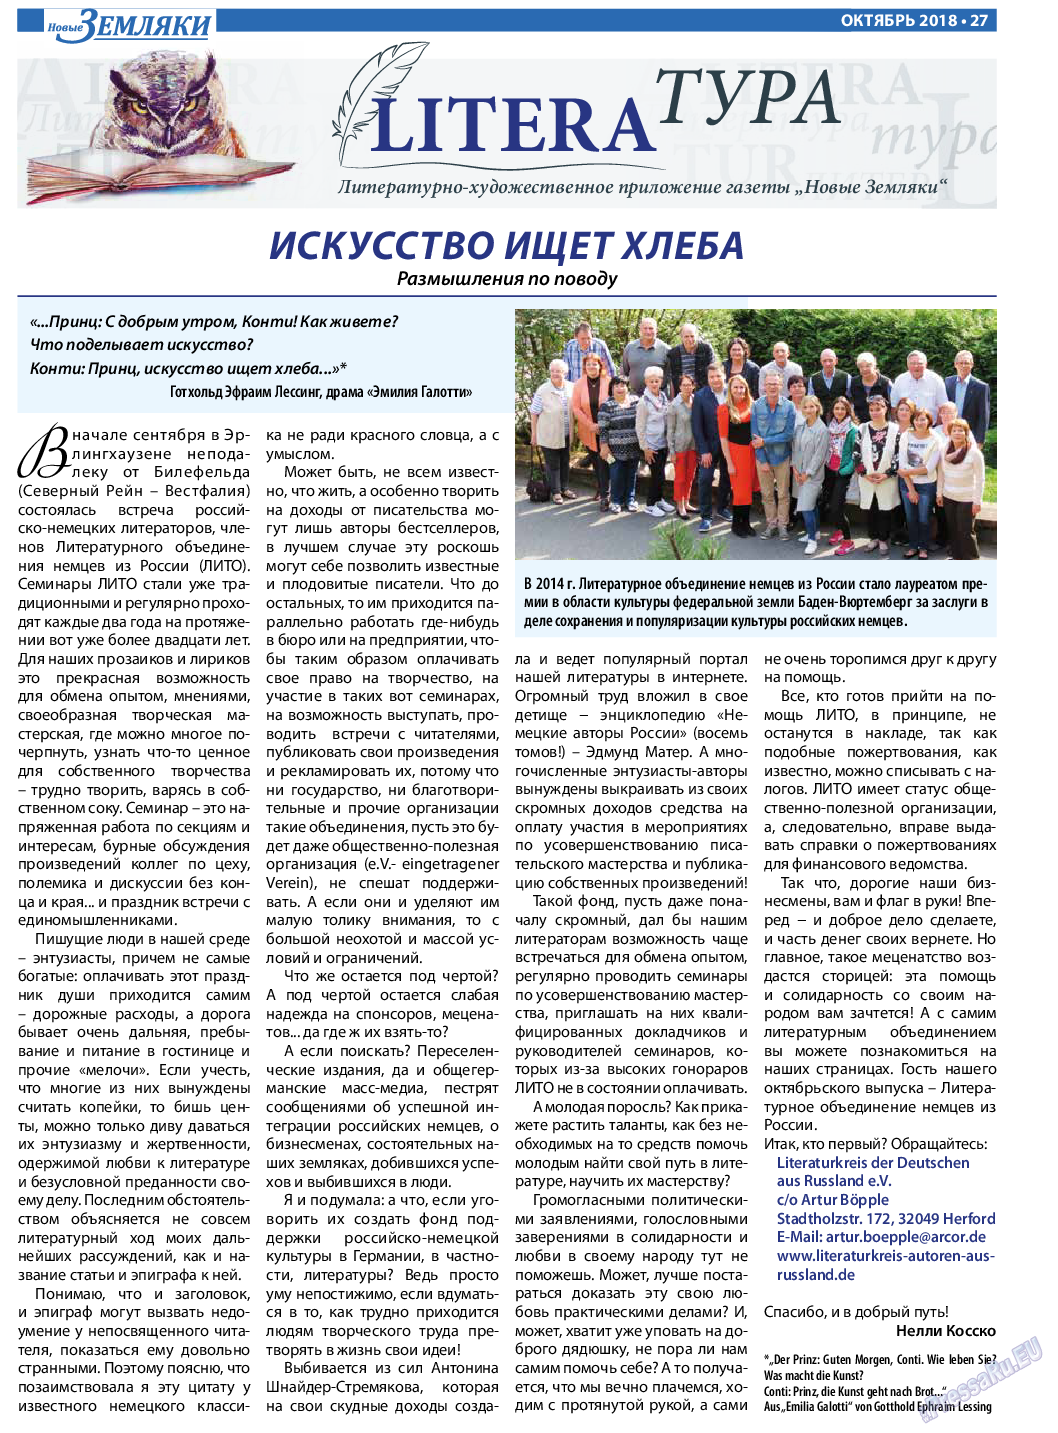 Новые Земляки, газета. 2018 №10 стр.27